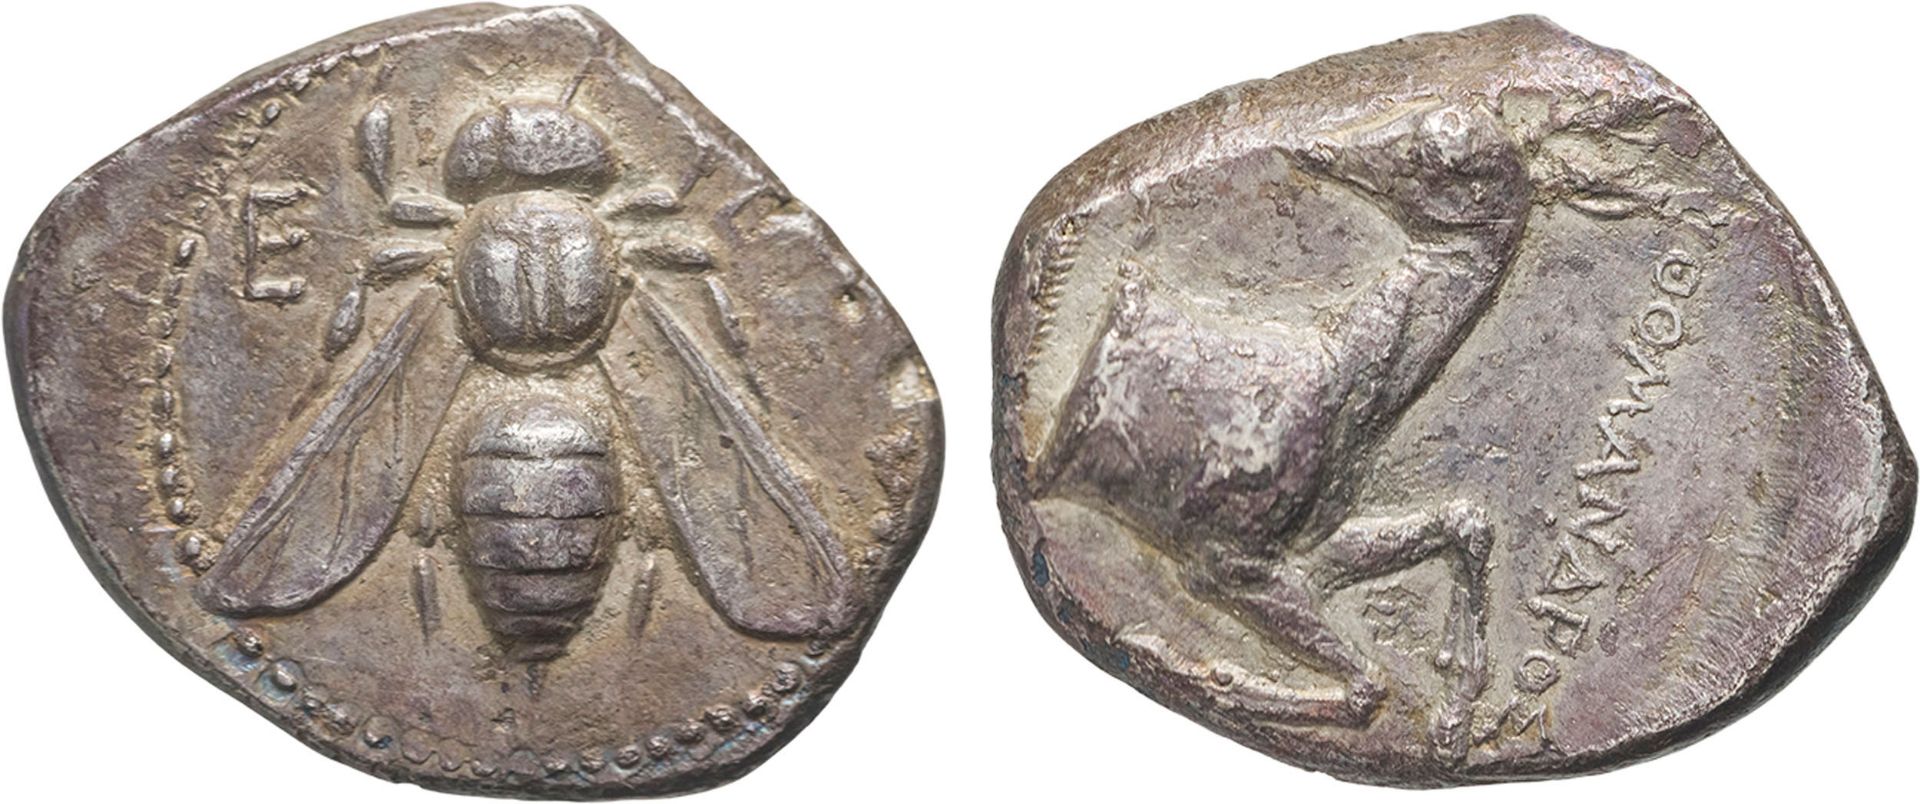 MONETE GRECHE. IONIA. EFESO (CIRCA 340 A.C.). TETRADRACMA